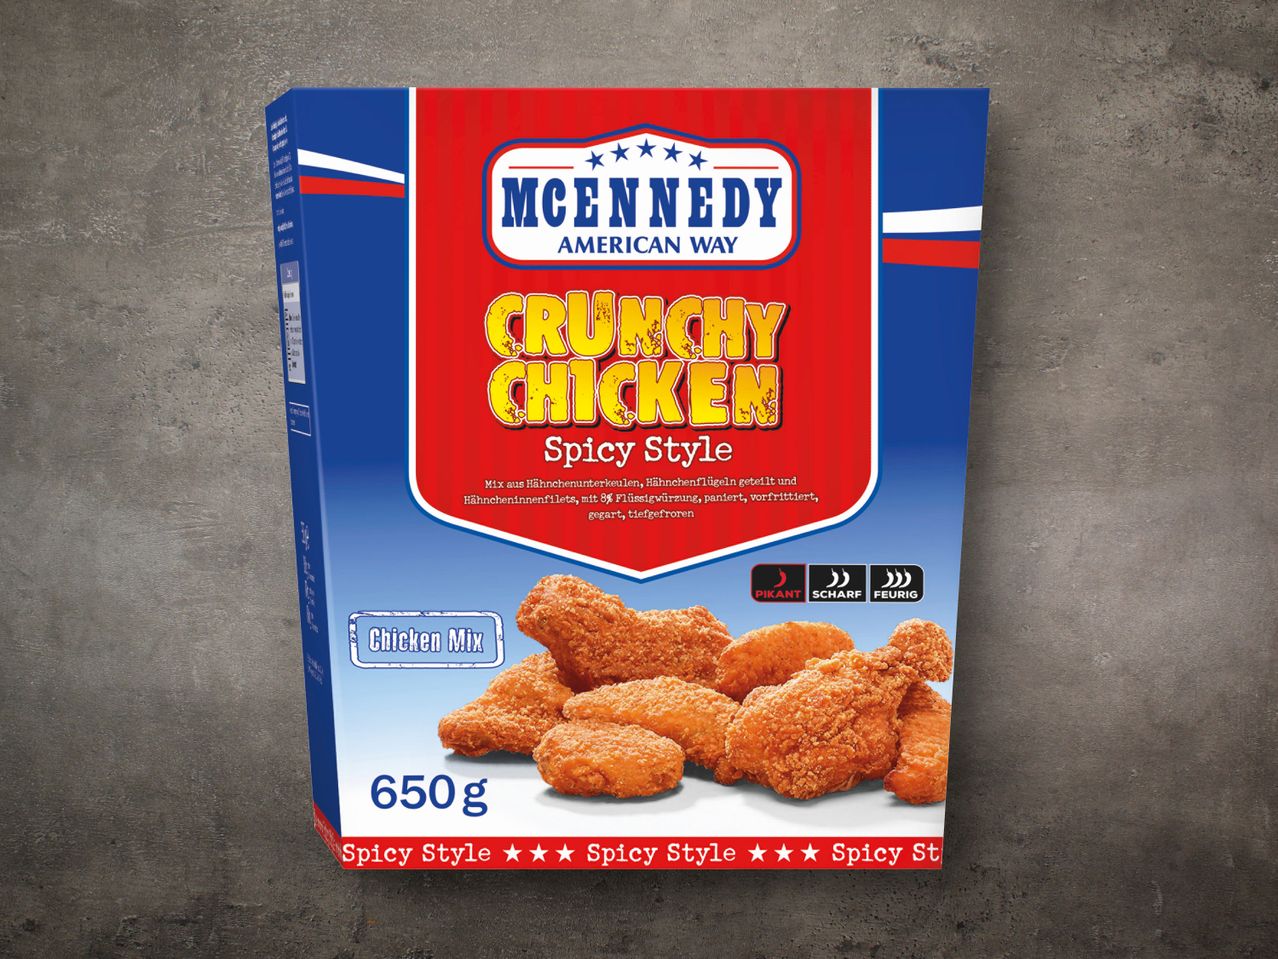 Chicken Bucket Crunchy McEnnedy